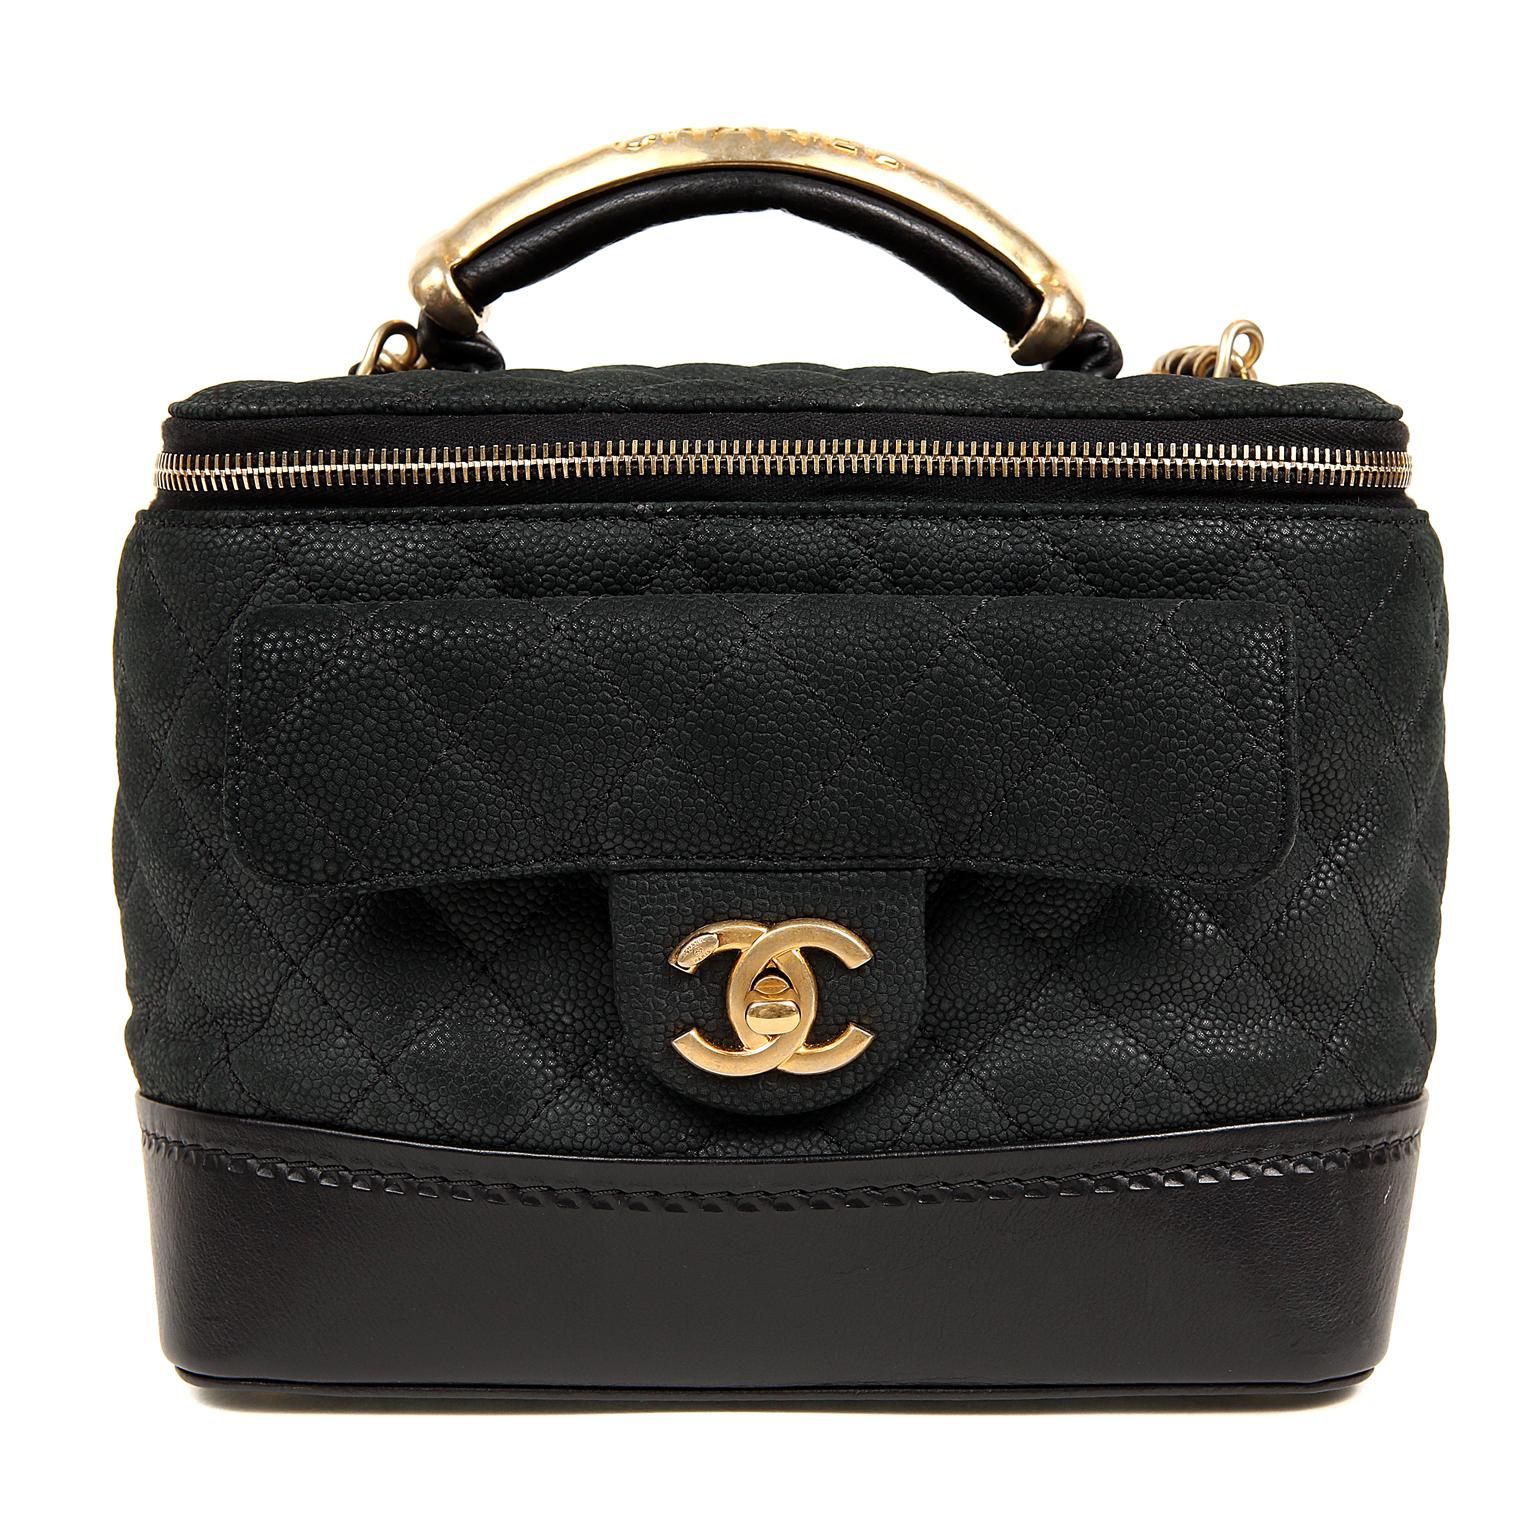 Chanel Black Leather Globetrotter Bag 7